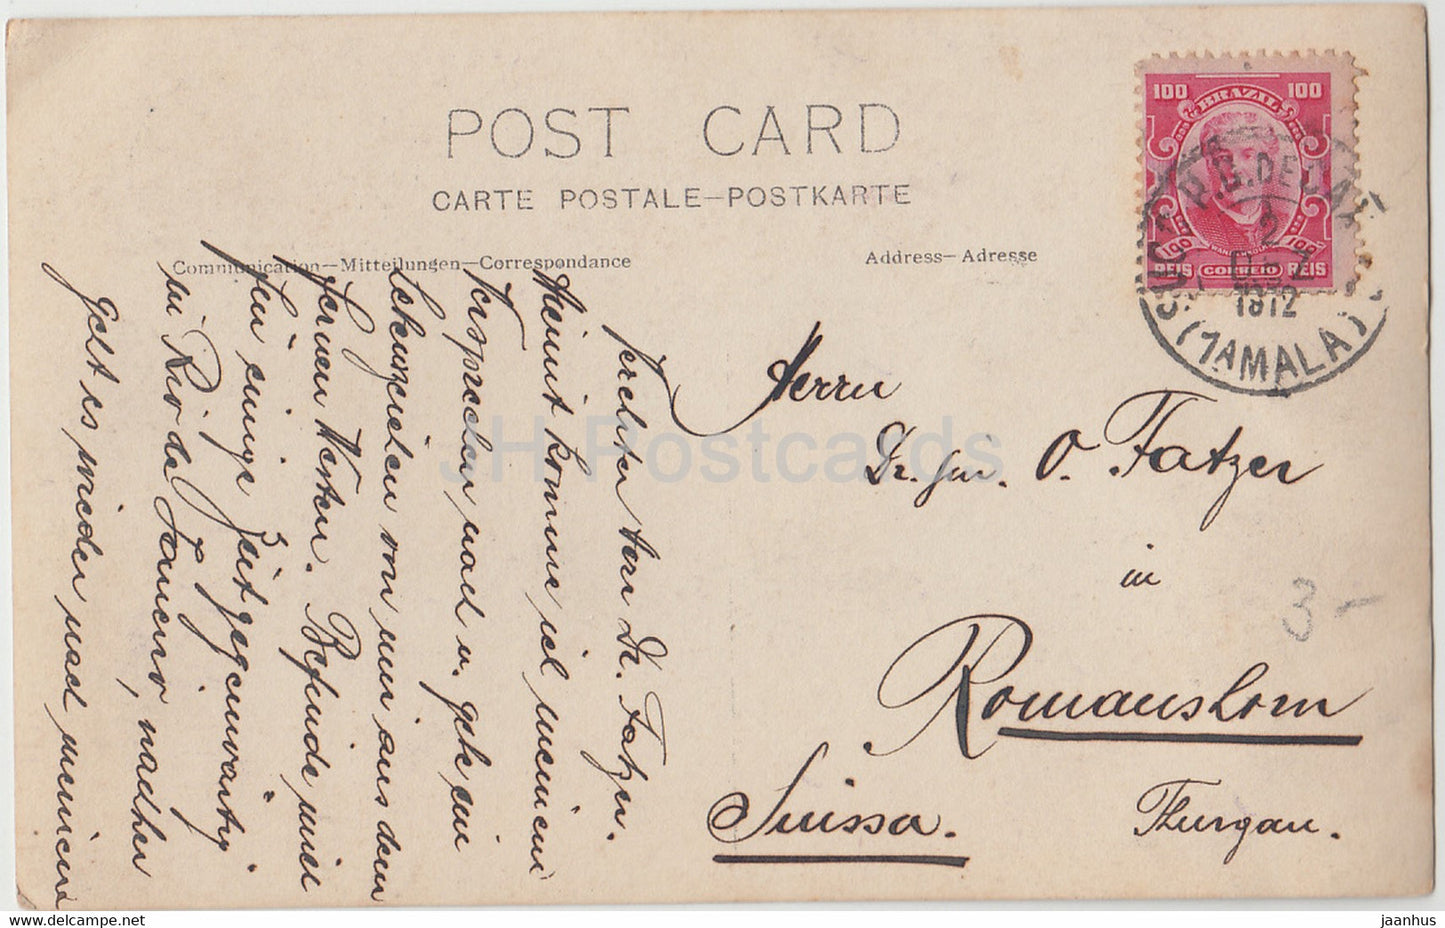 Rio de Janeiro - Vue - carte postale ancienne - 1912 - Brésil - utilisé